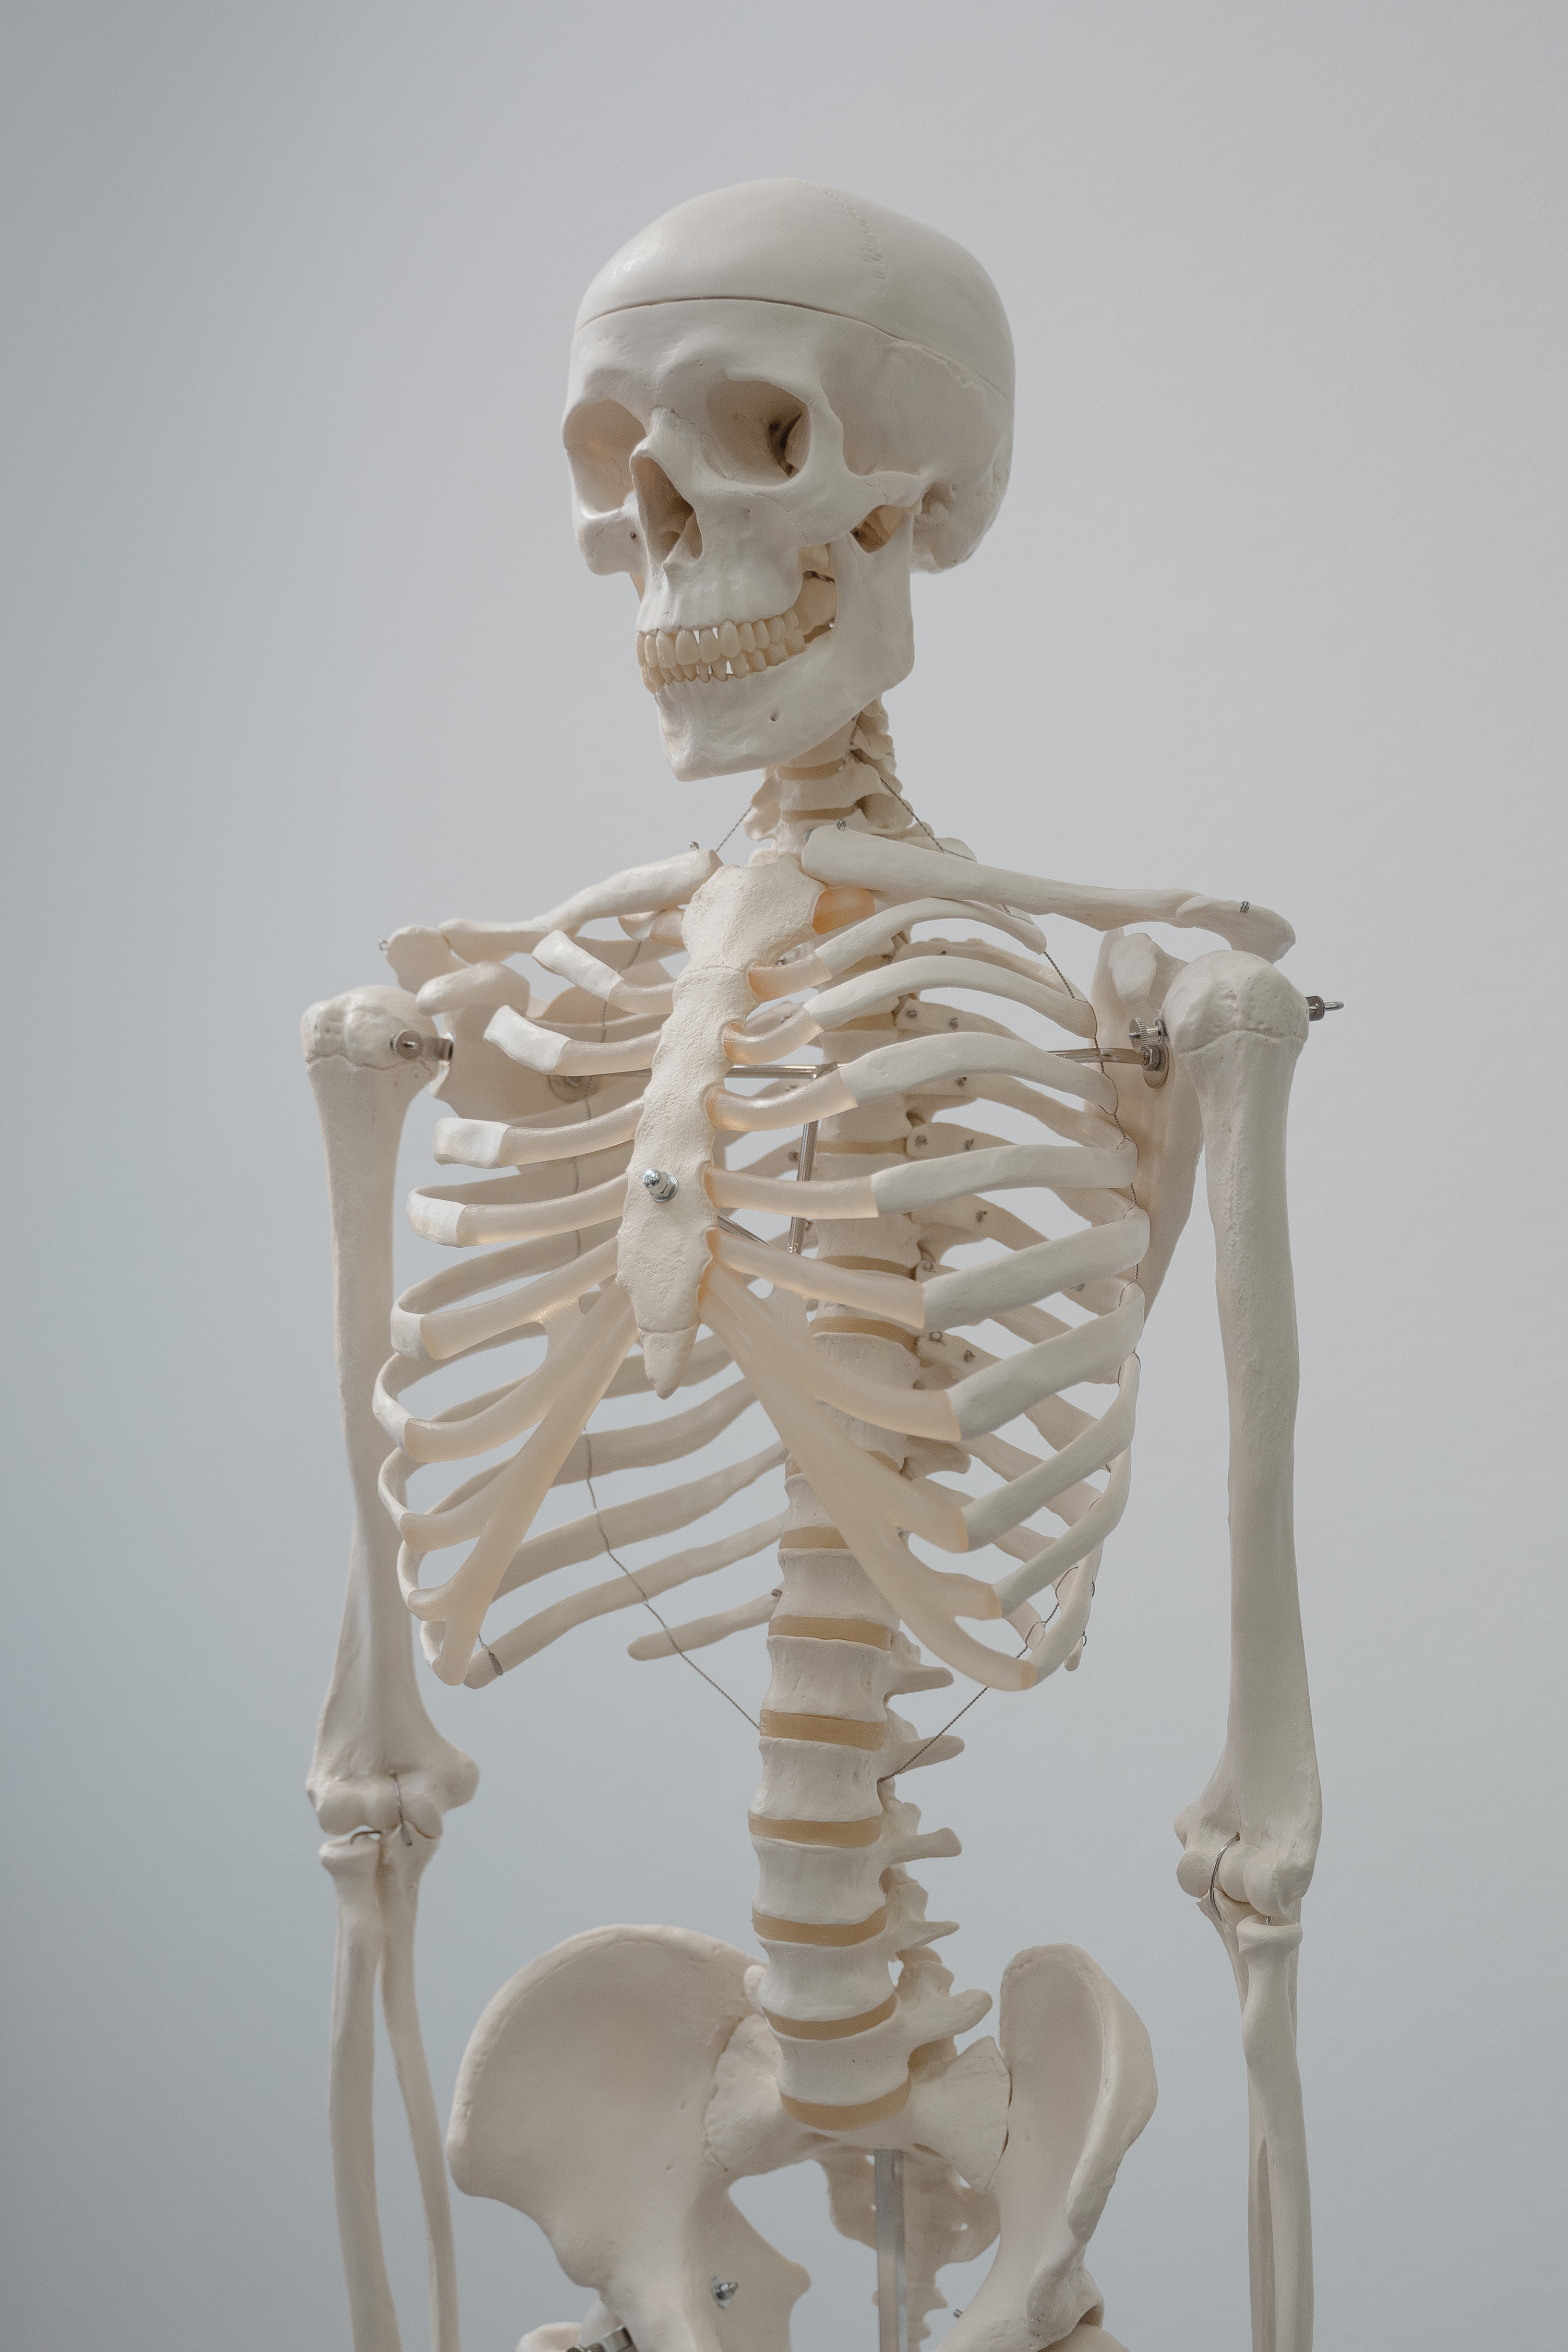 Human Skeleton Model · Free